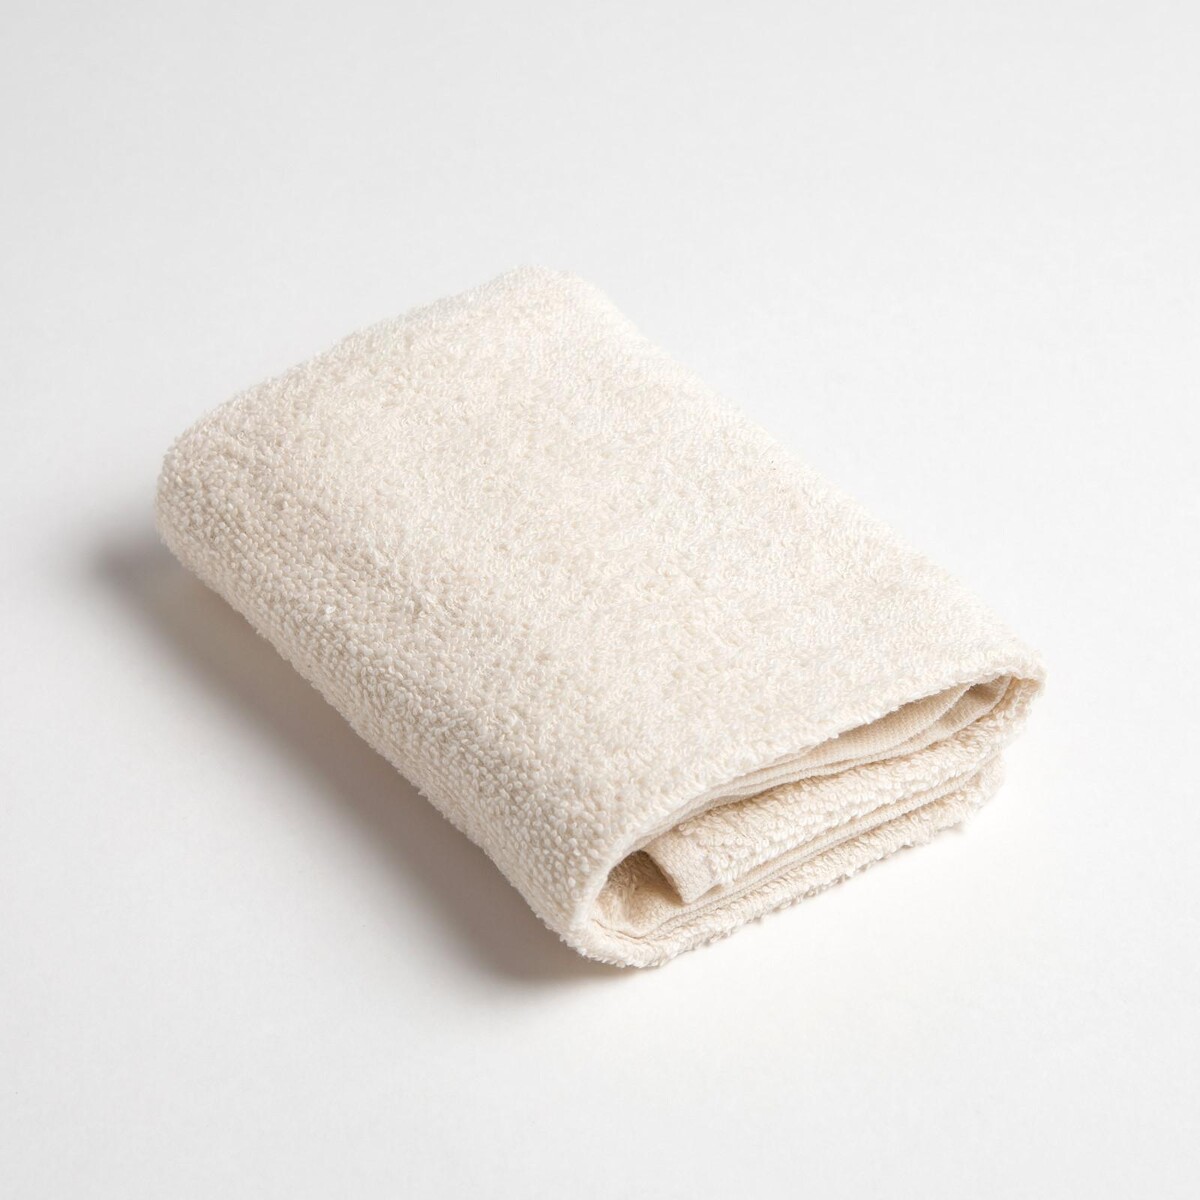 Полотенце махровое полотенце подарочное в коробке экономь и я вид 2 30х60 см молочный 100% хлопок 320 г м2